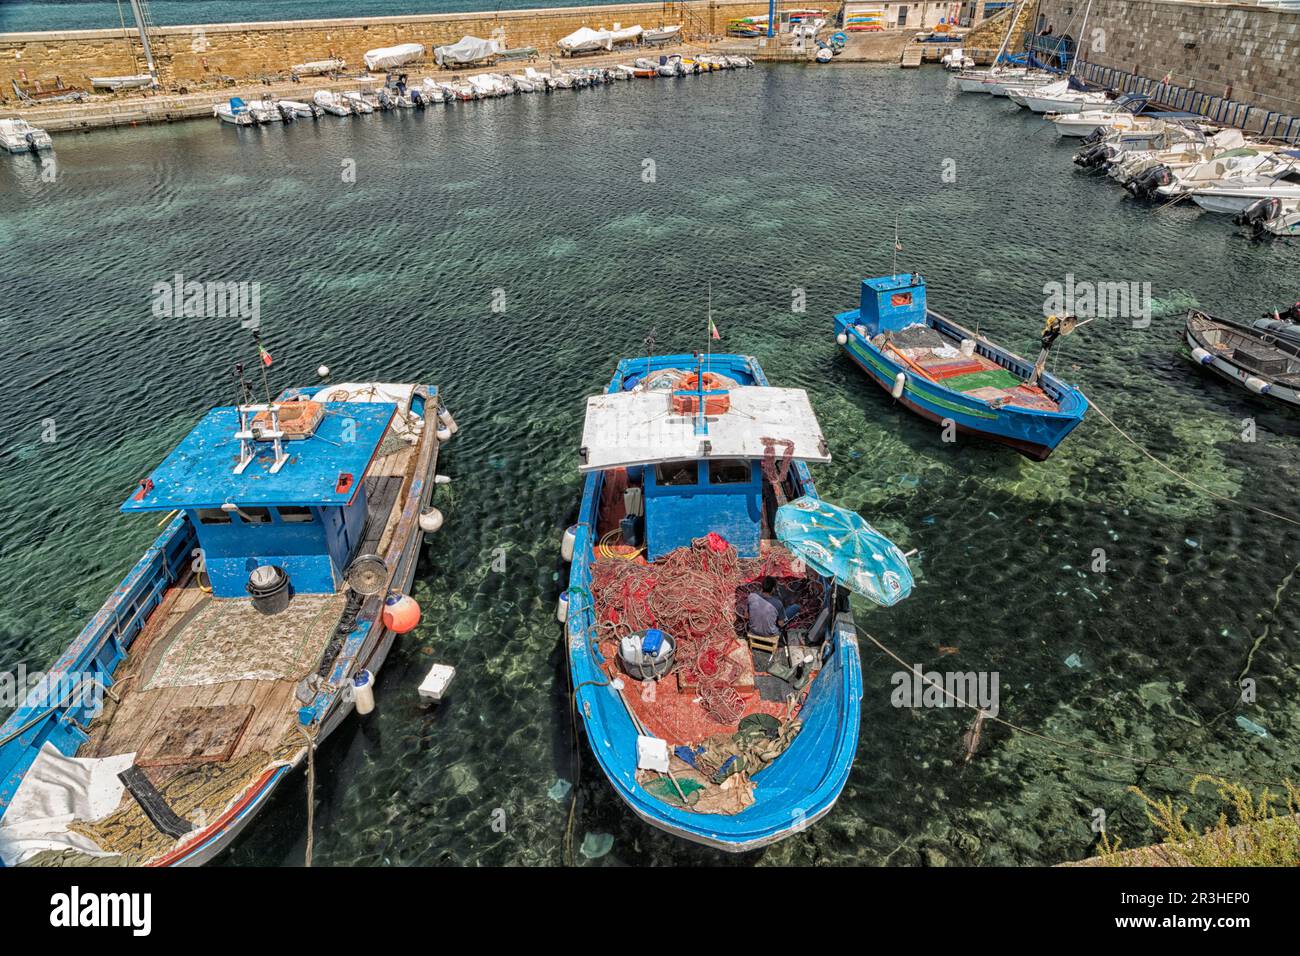 Fischer reparieren sein Netz auf dem Boot Stockfotografie - Alamy